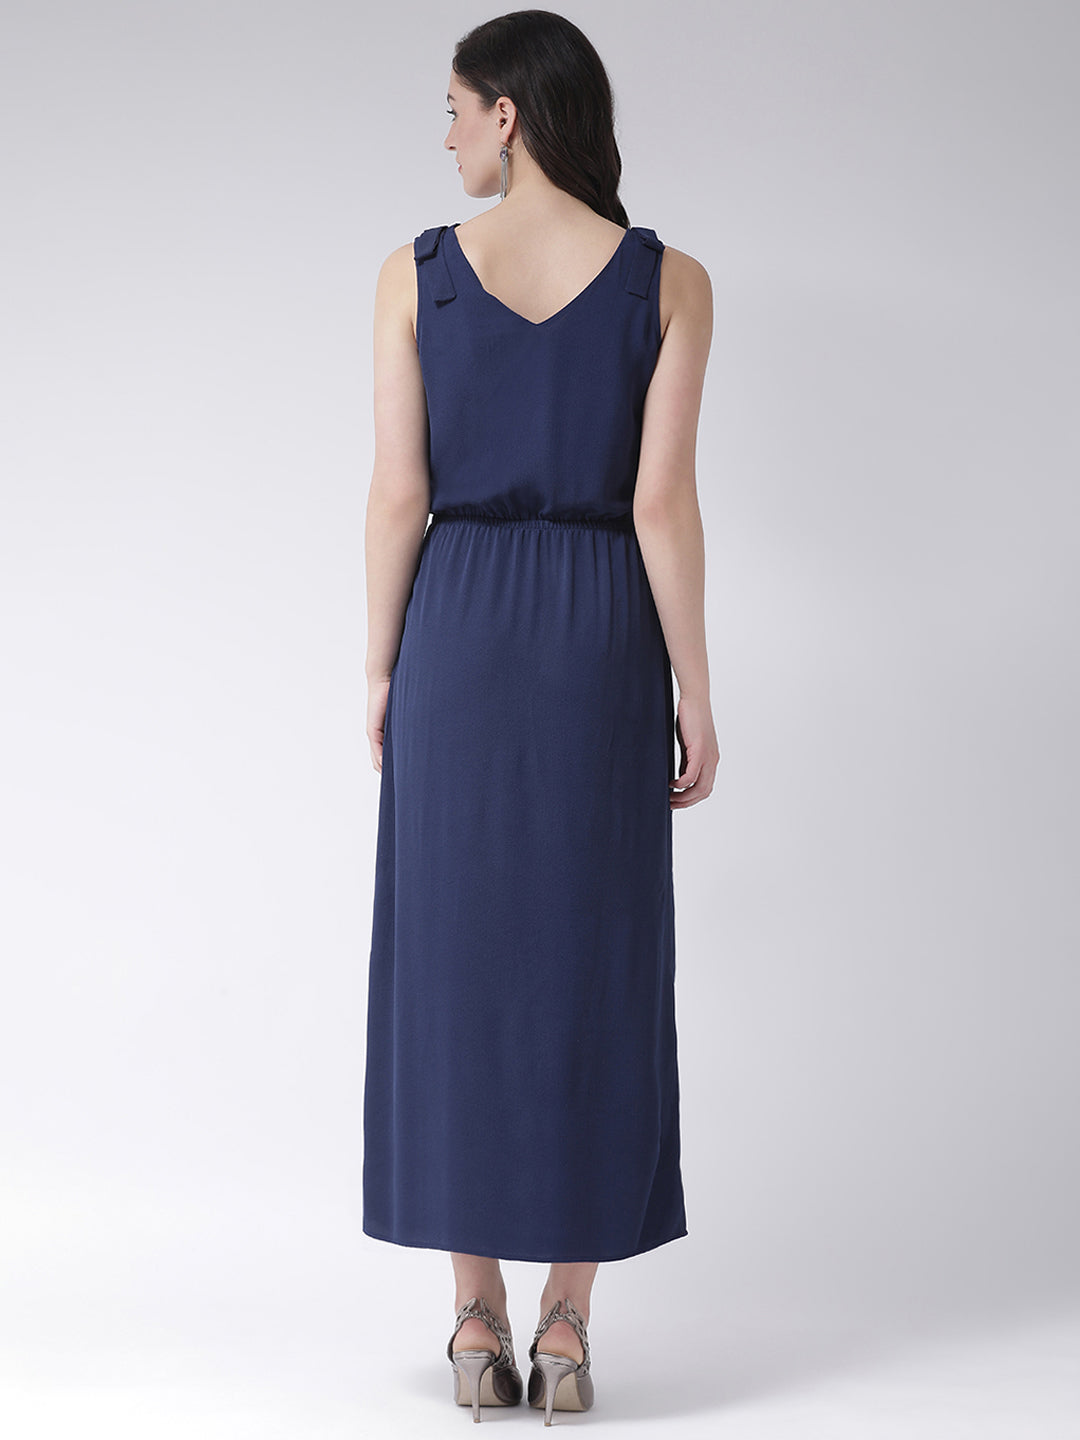 Blue Navy Sleeveless Maxi Dress